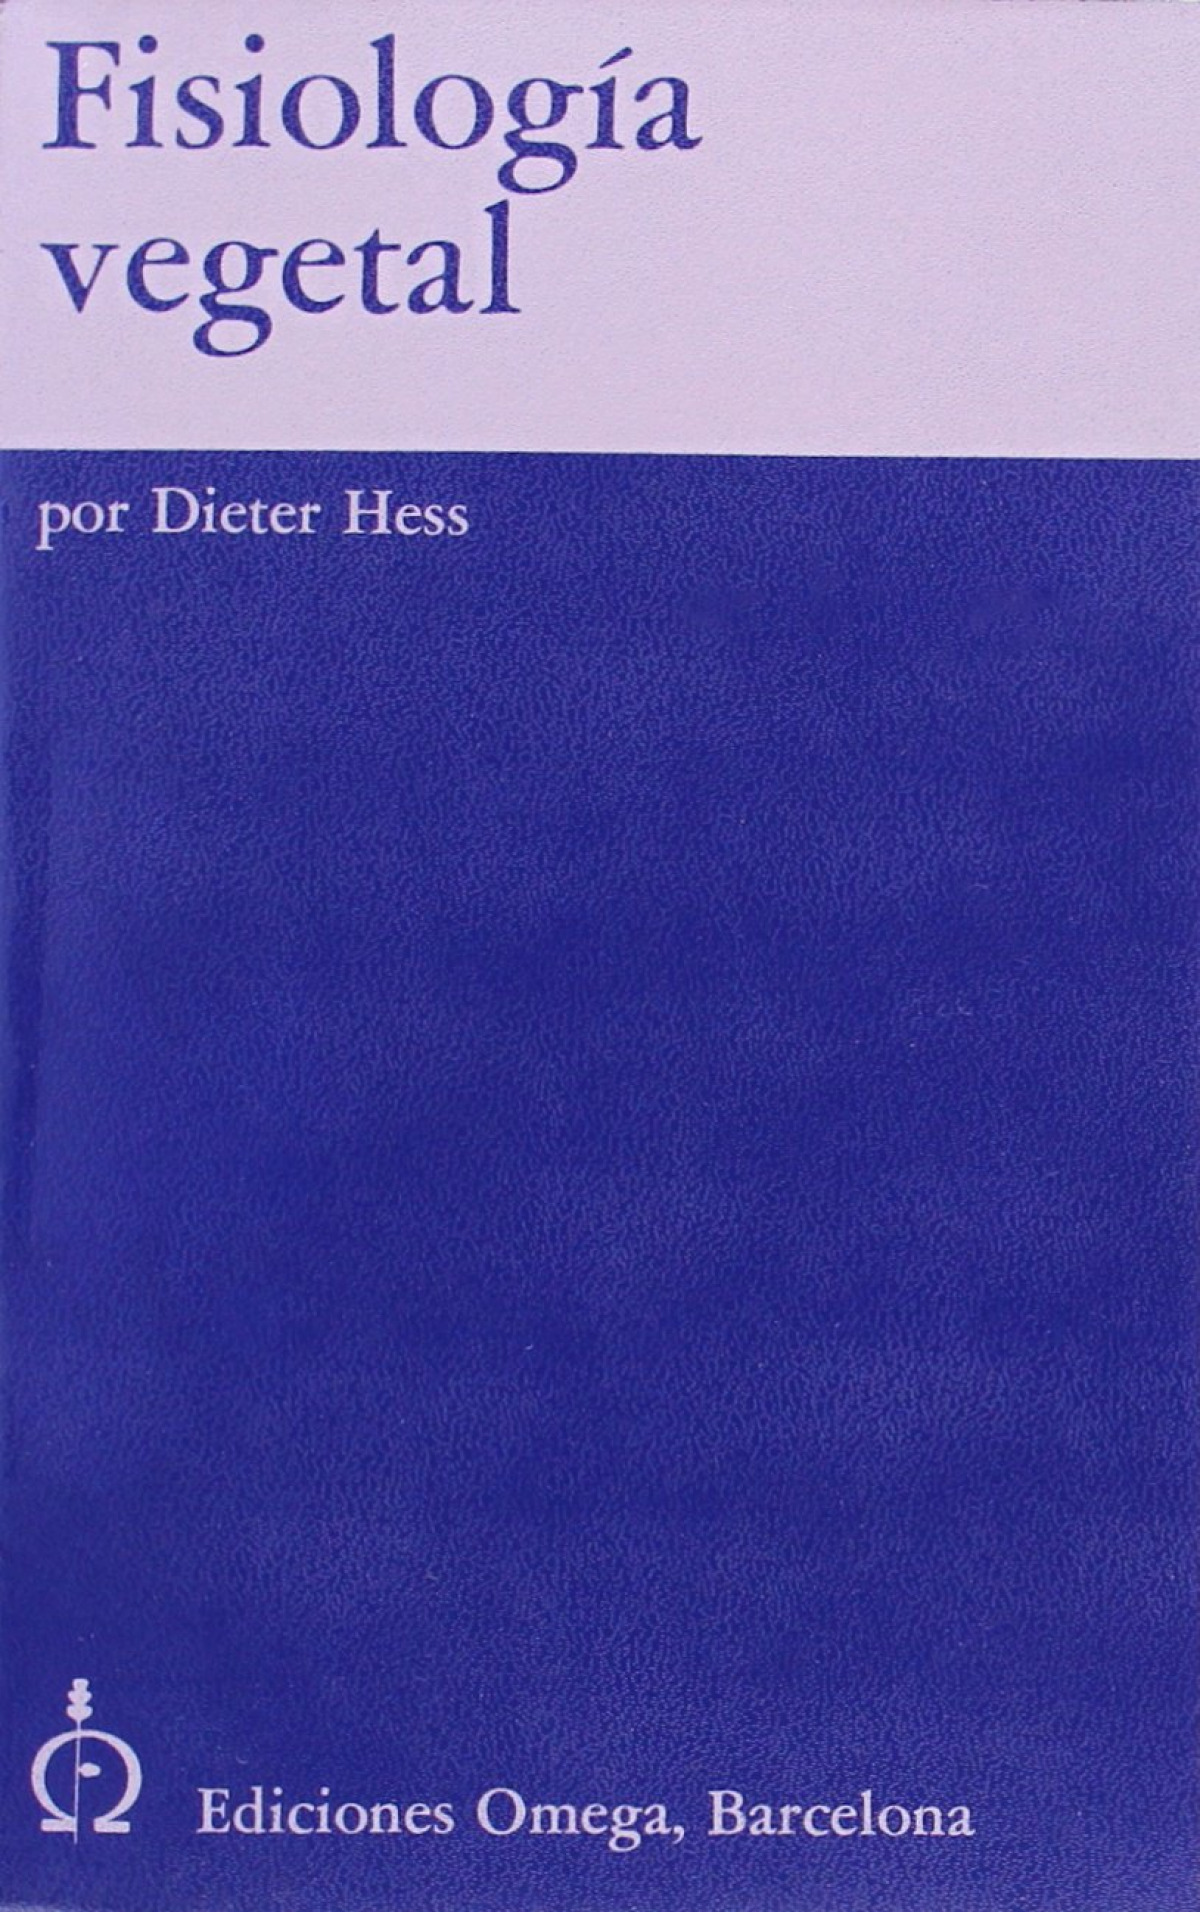 Fisiologia vegetal - Hess, Dieter